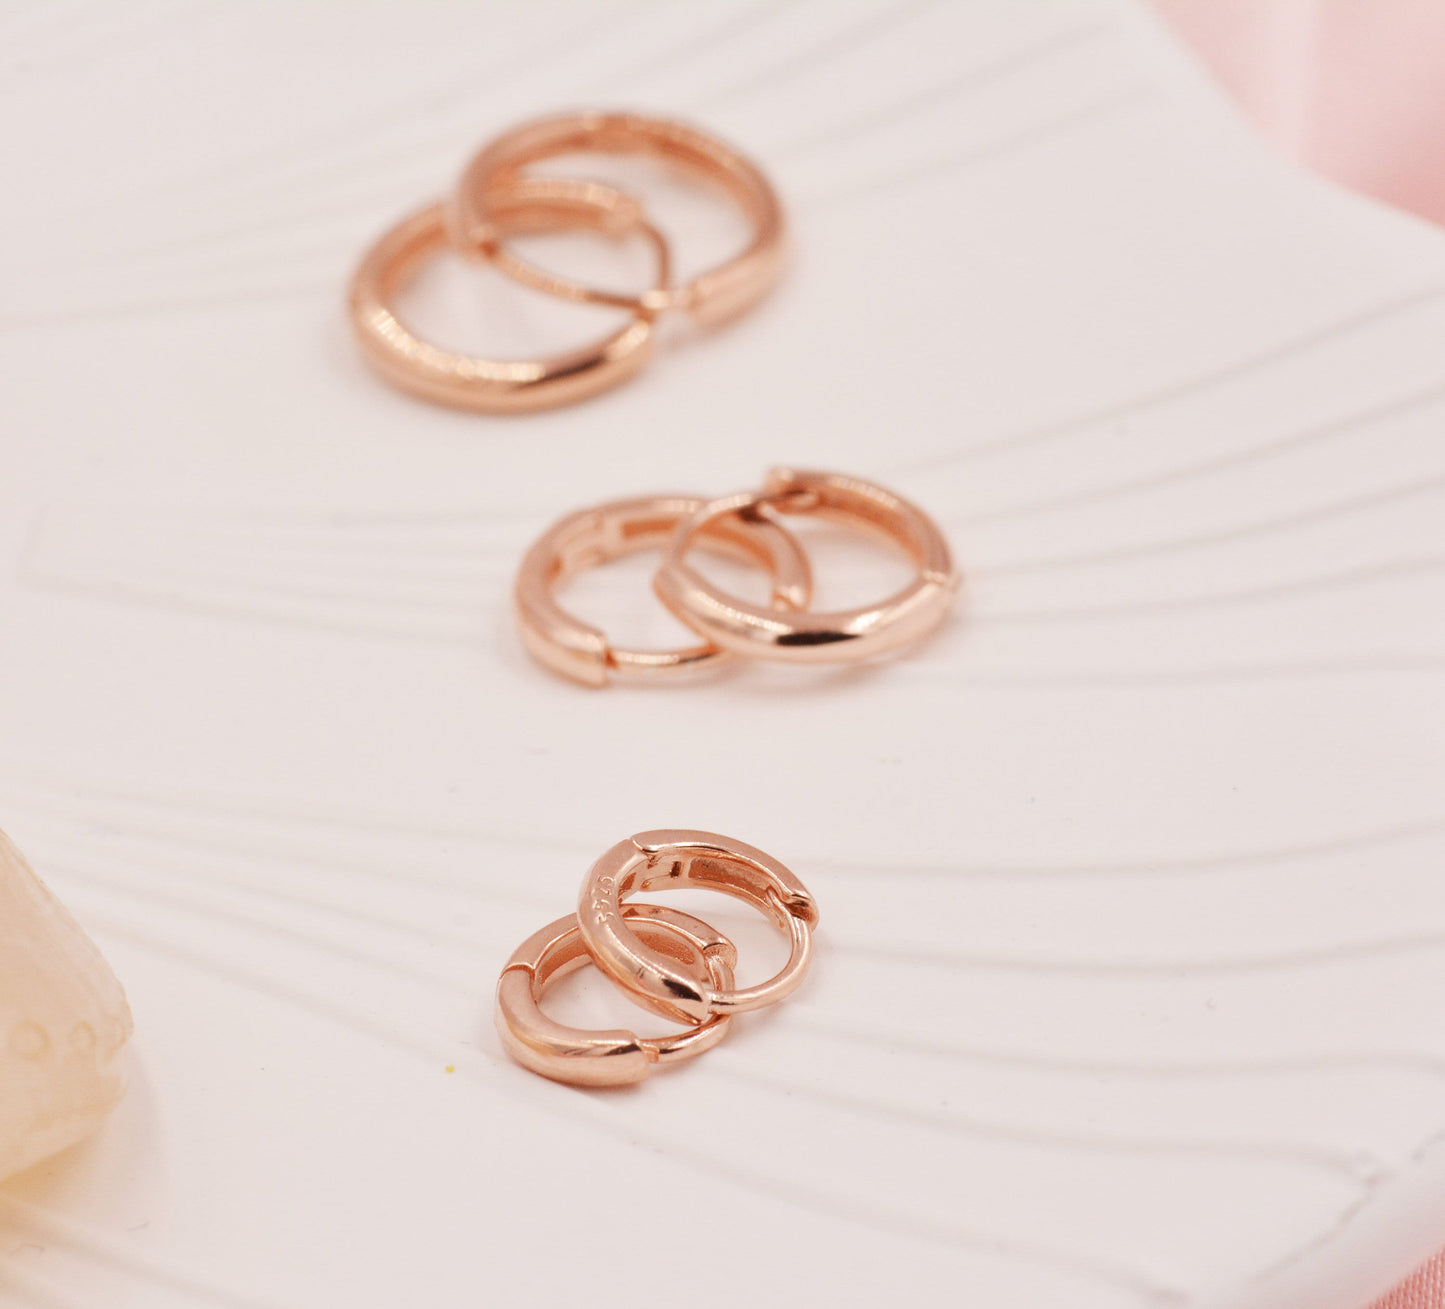 Minimalist Huggie Hoop Earrings in Sterling Silver, 6mm,  8mm and 10mm Skinny Hoops, Rose Gold or Gold, Simple Hoop Earrings